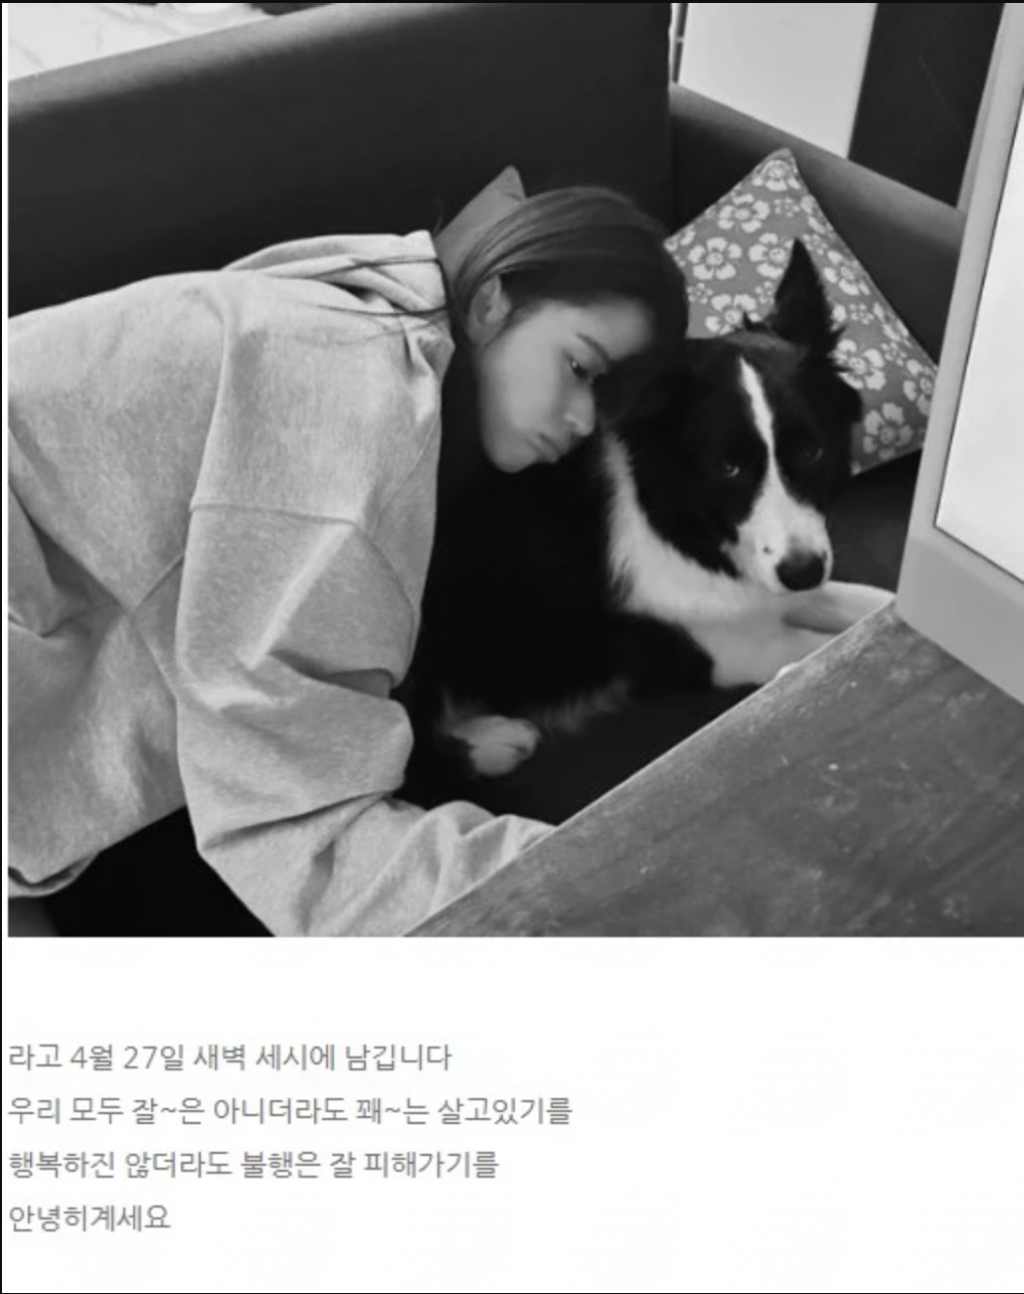 Han So Hee viết thư gửi người hâm mộ: ‘Tại sao cuộc sống lại khó khăn như vậy’?